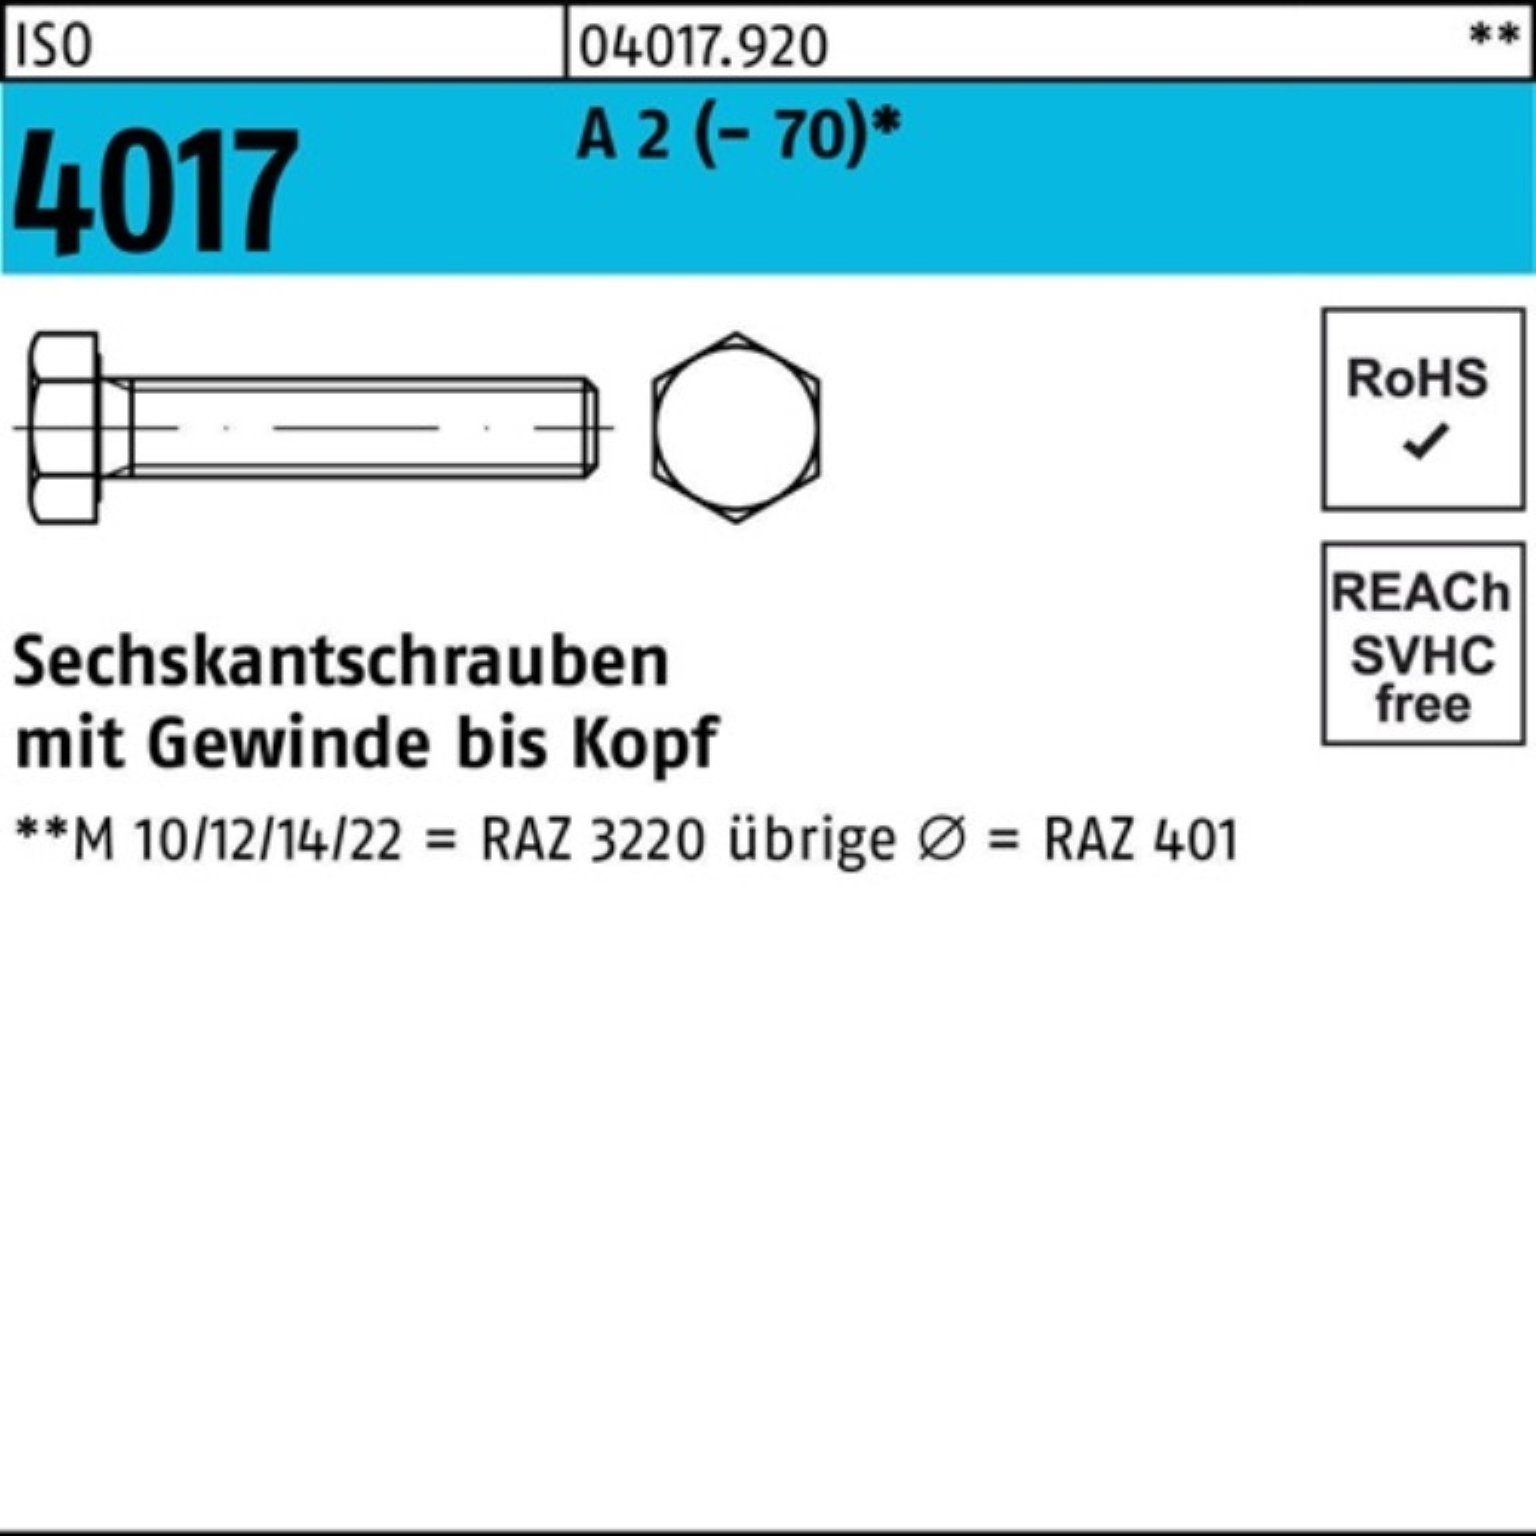 Sechskantschraube ISO 2 VG Sechskantschraube 100er A (70) Pack 70 M33x Stück Bufab 1 4017 I